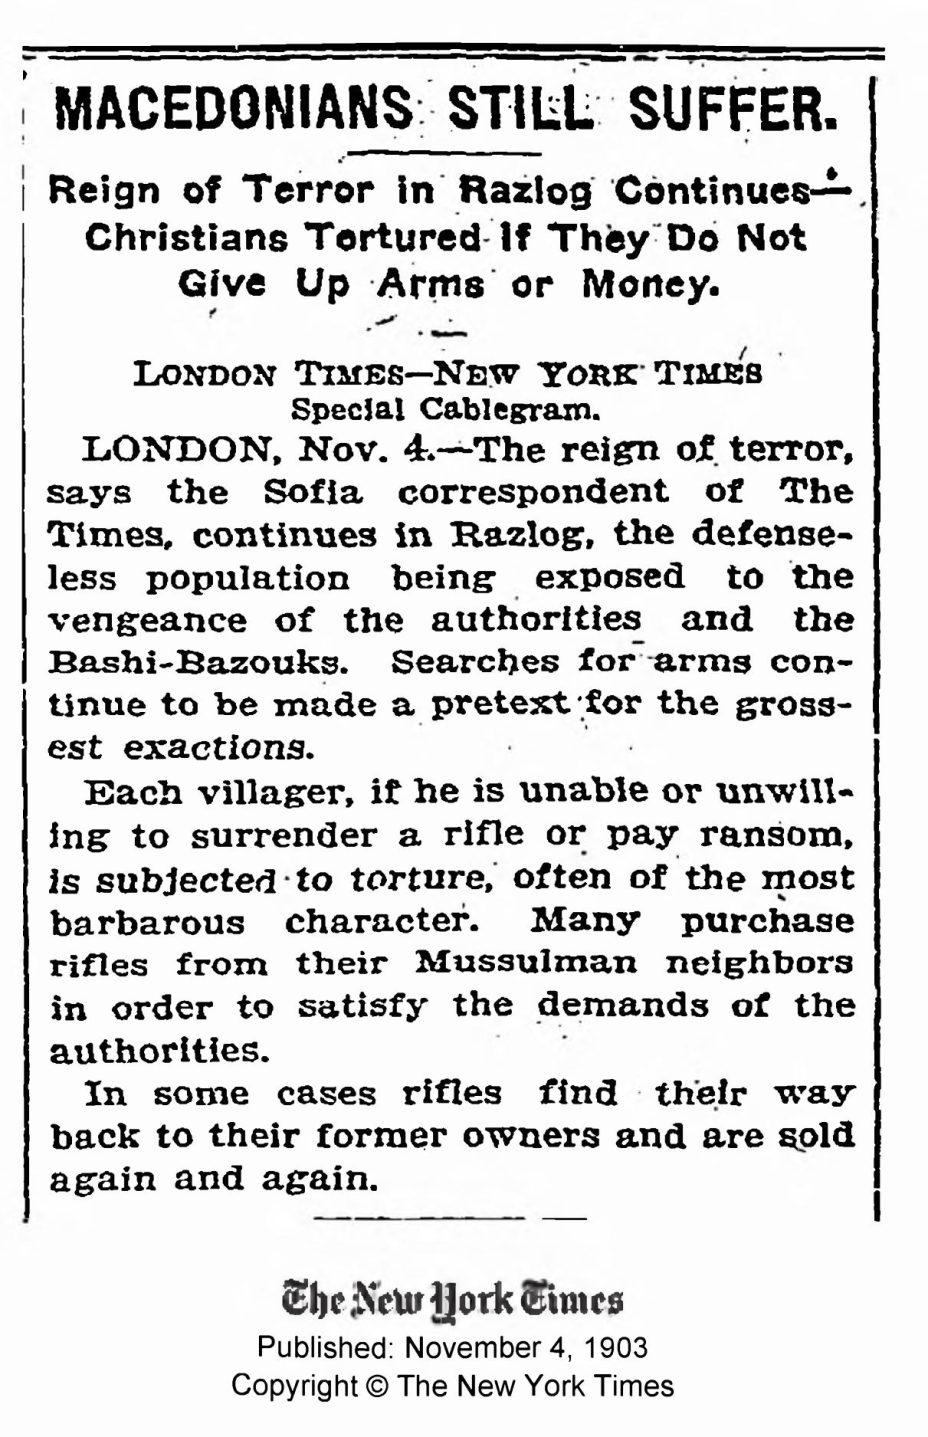 1903.11.04_The New York Times - Macedonians still suffer